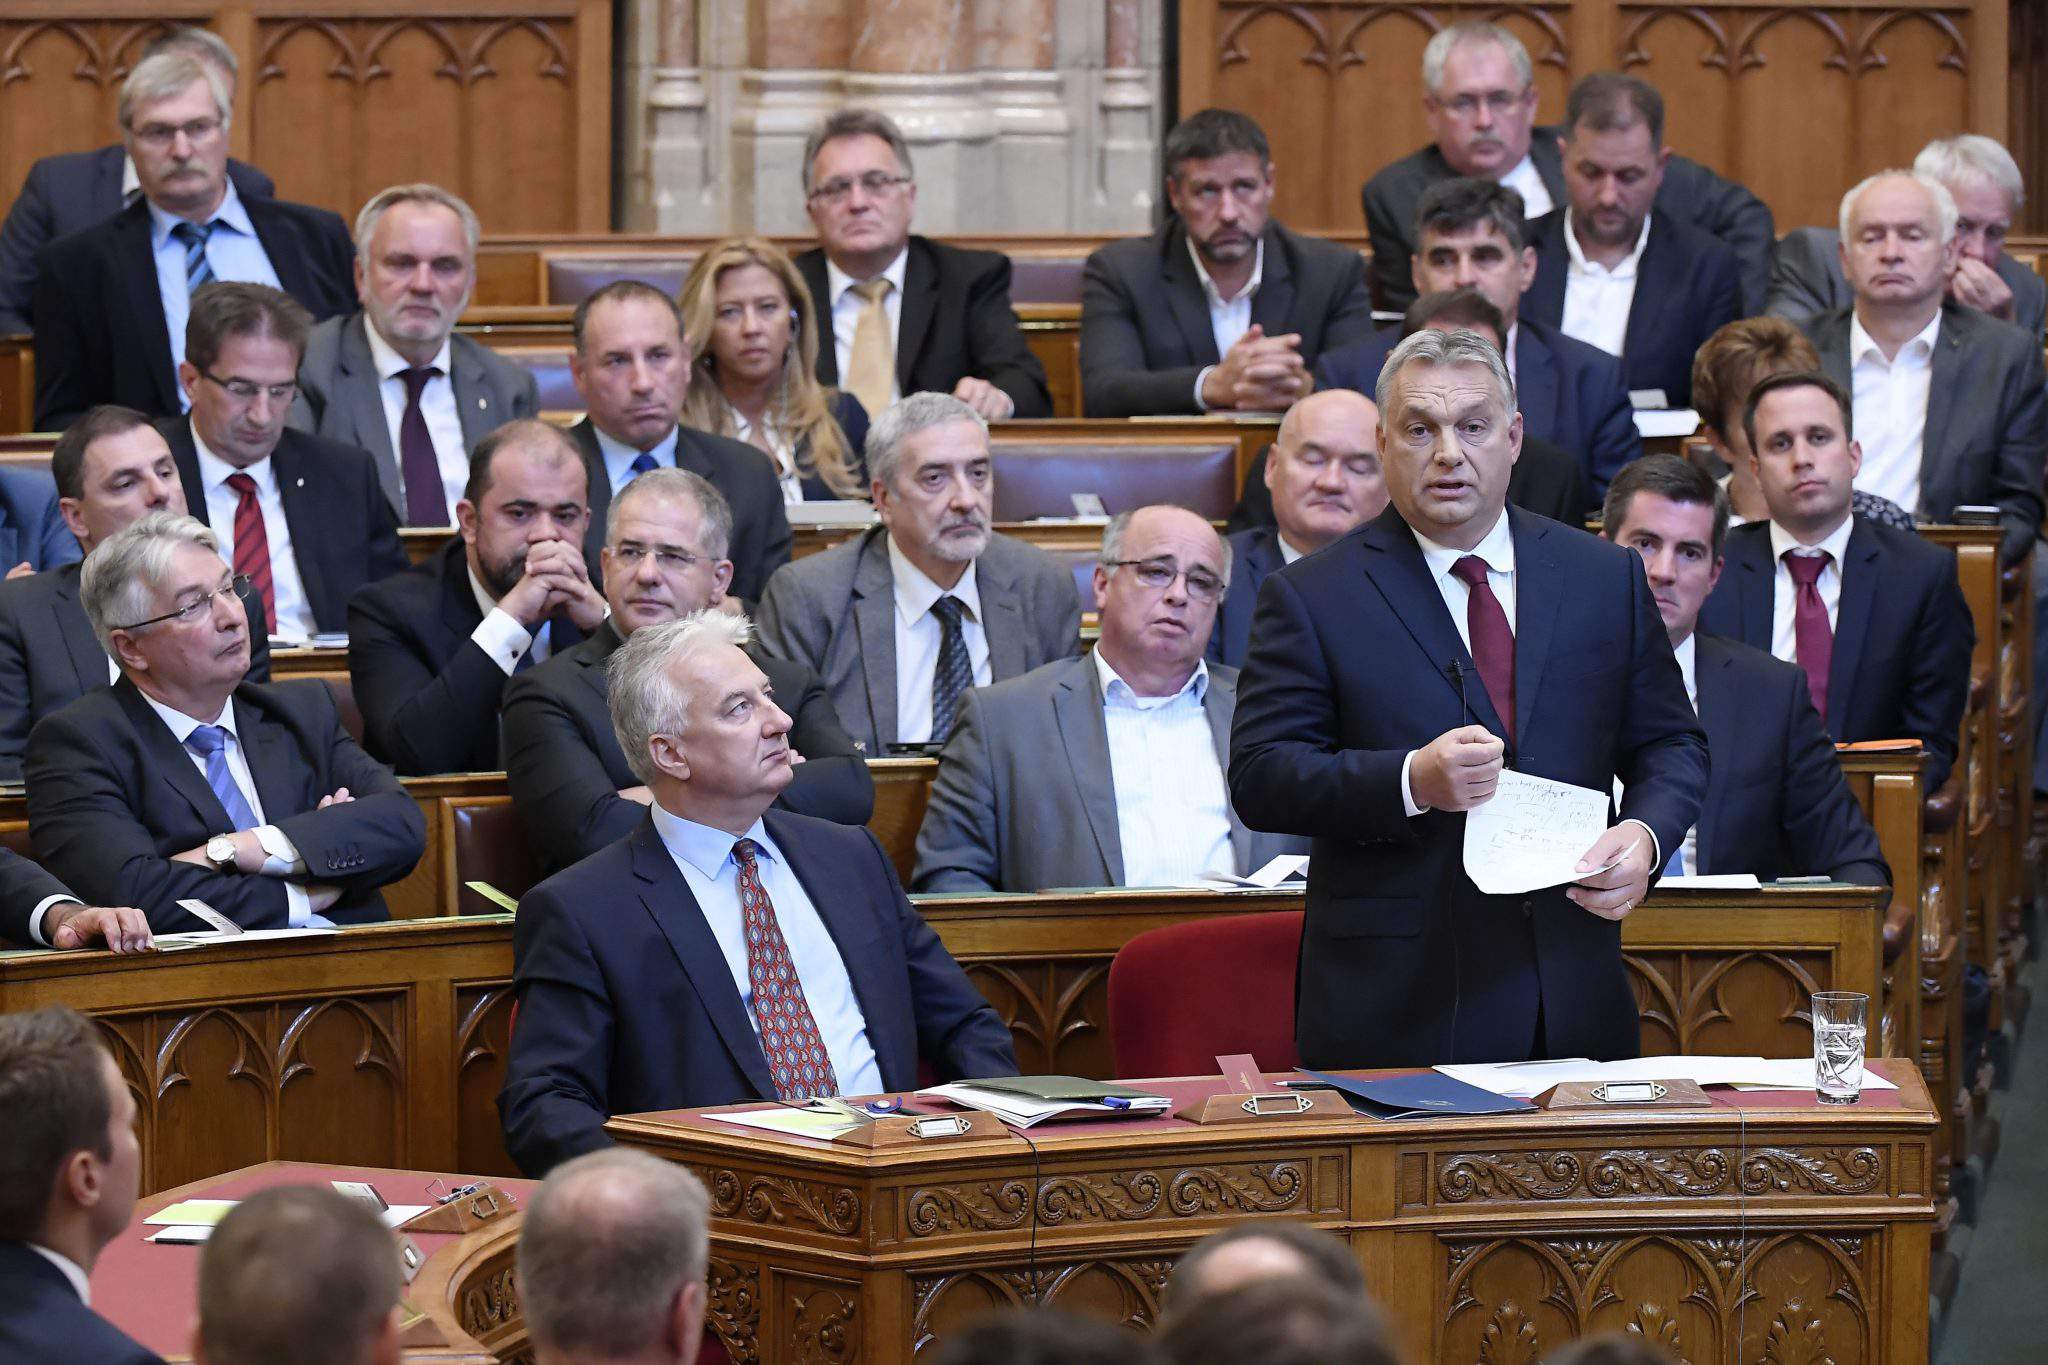 Orbánov govor u parlamentu